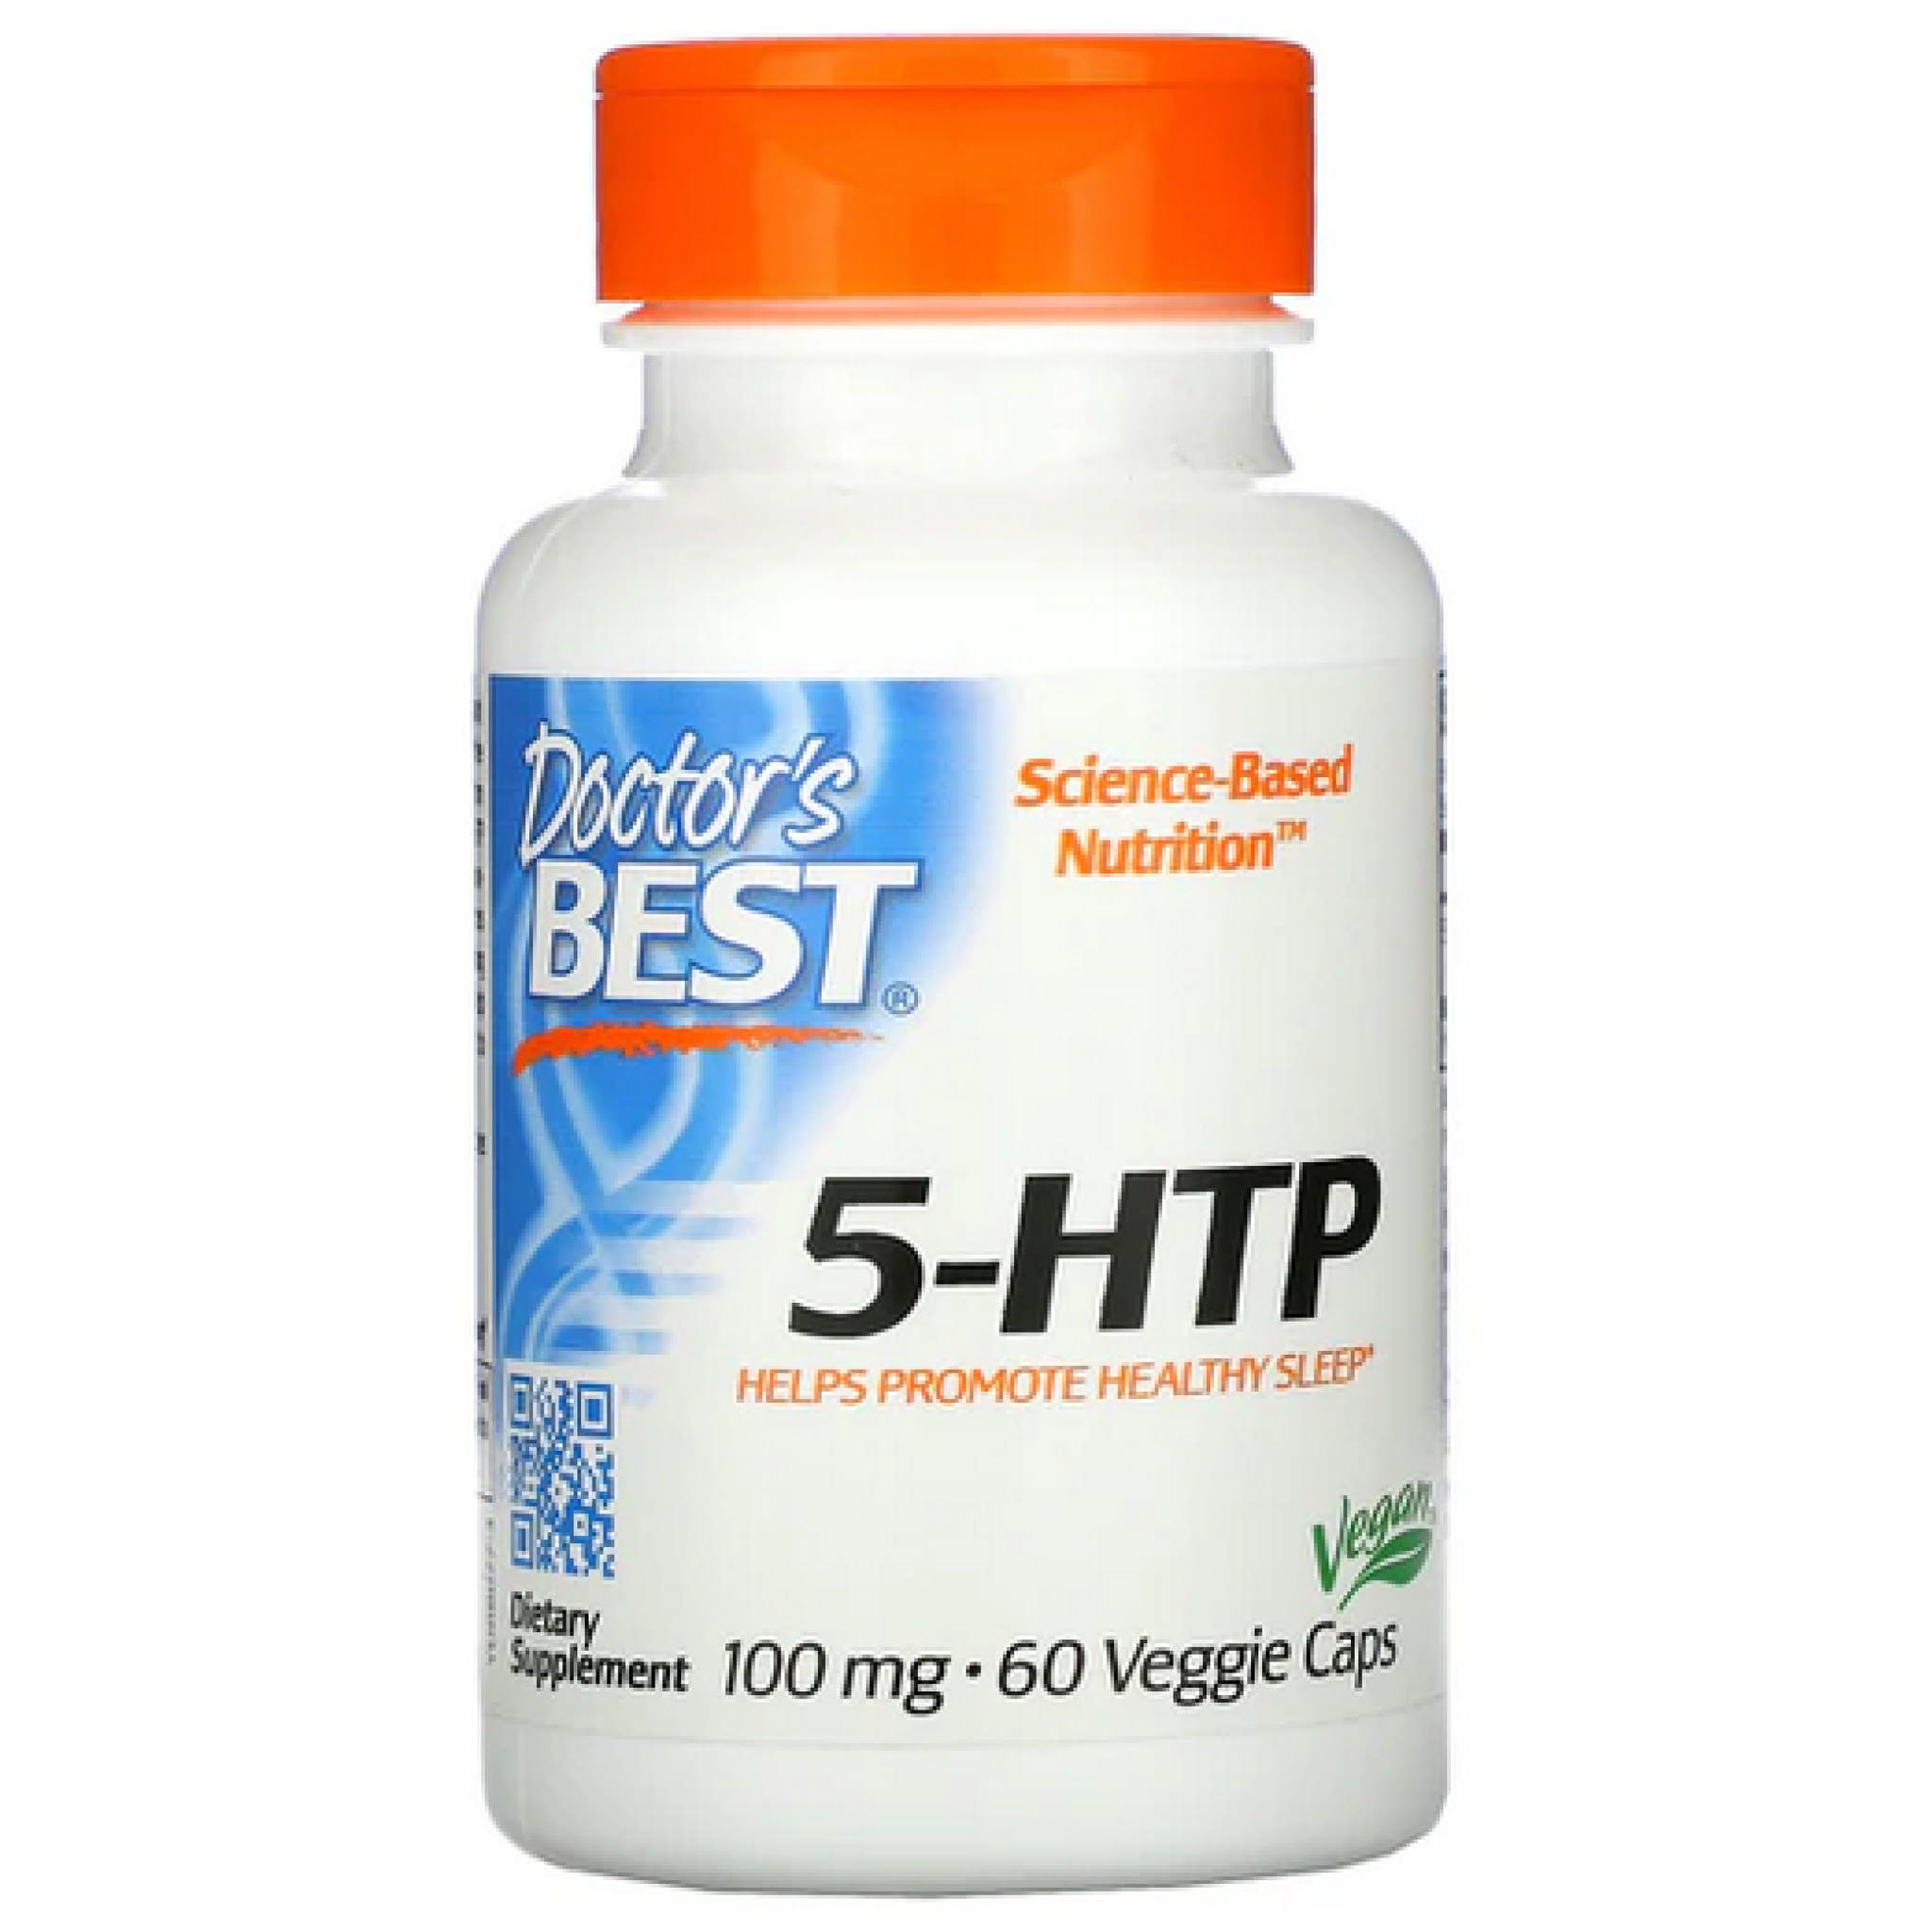 Doctors Best - 5 HTP 100 mg Best